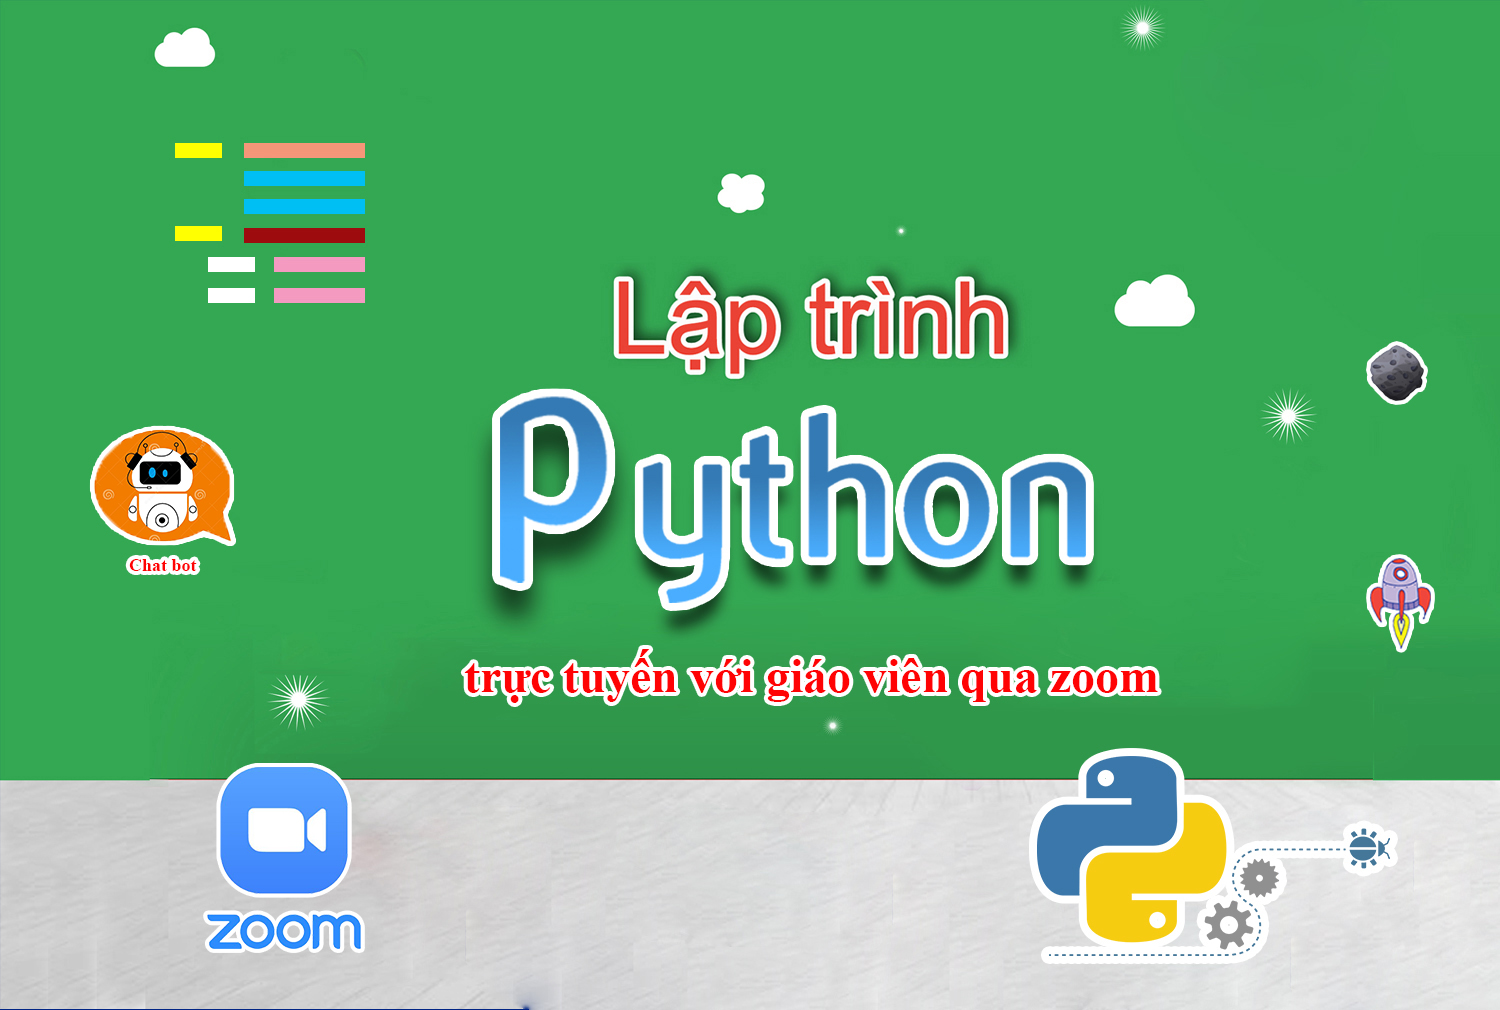 Lập trình Python trực tuyến với giáo viên (Lớp zoom)